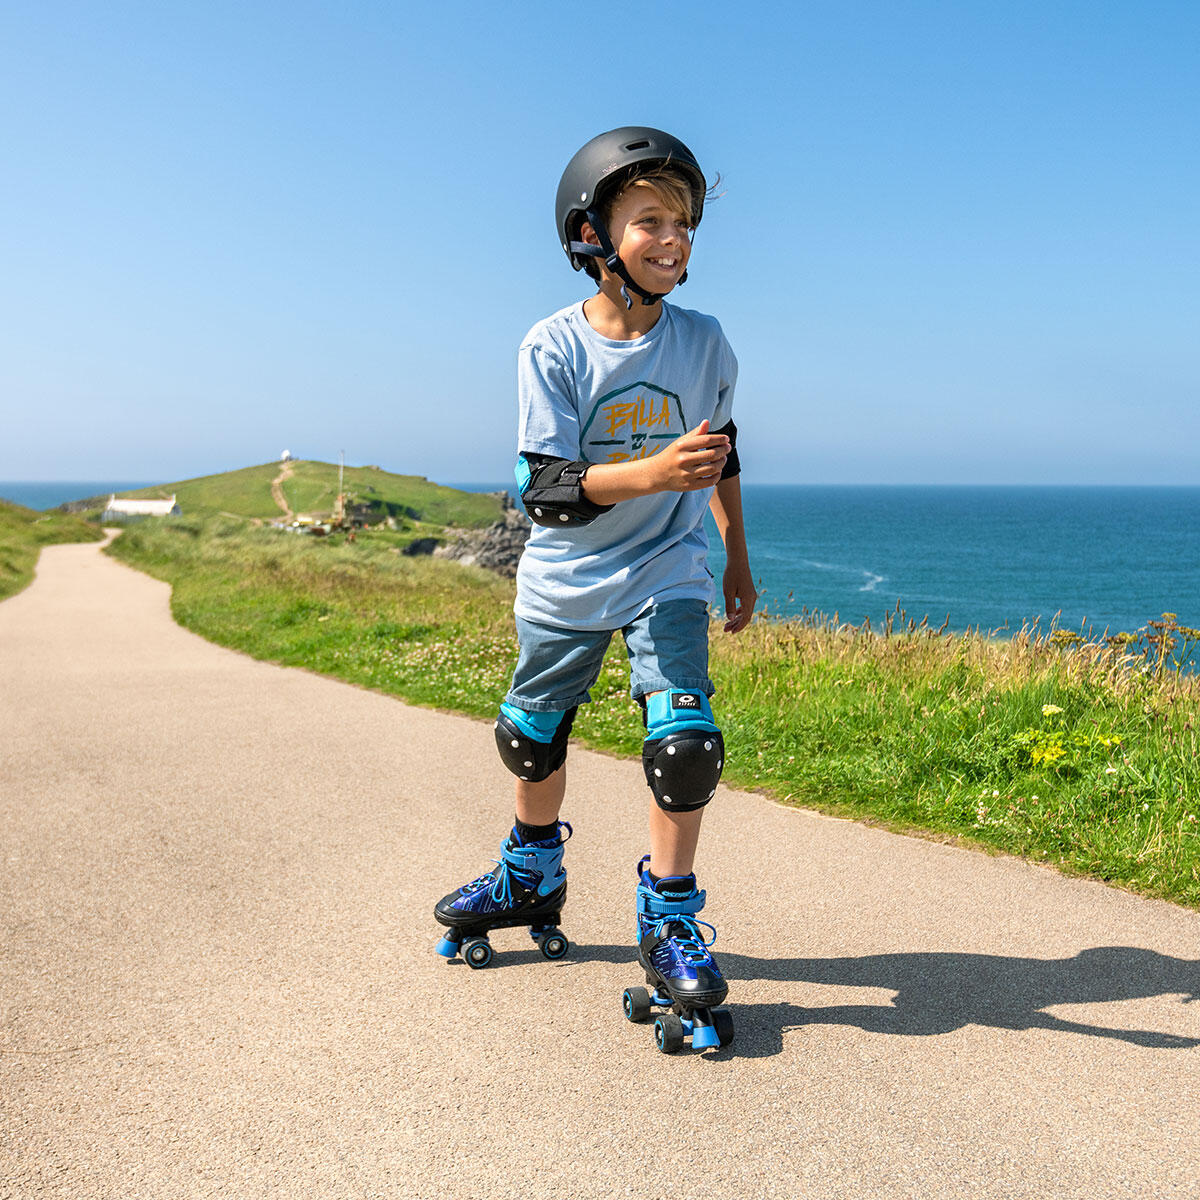 Osprey Surge Kids Semi Soft Quad Roller Skates for Kids 2/4